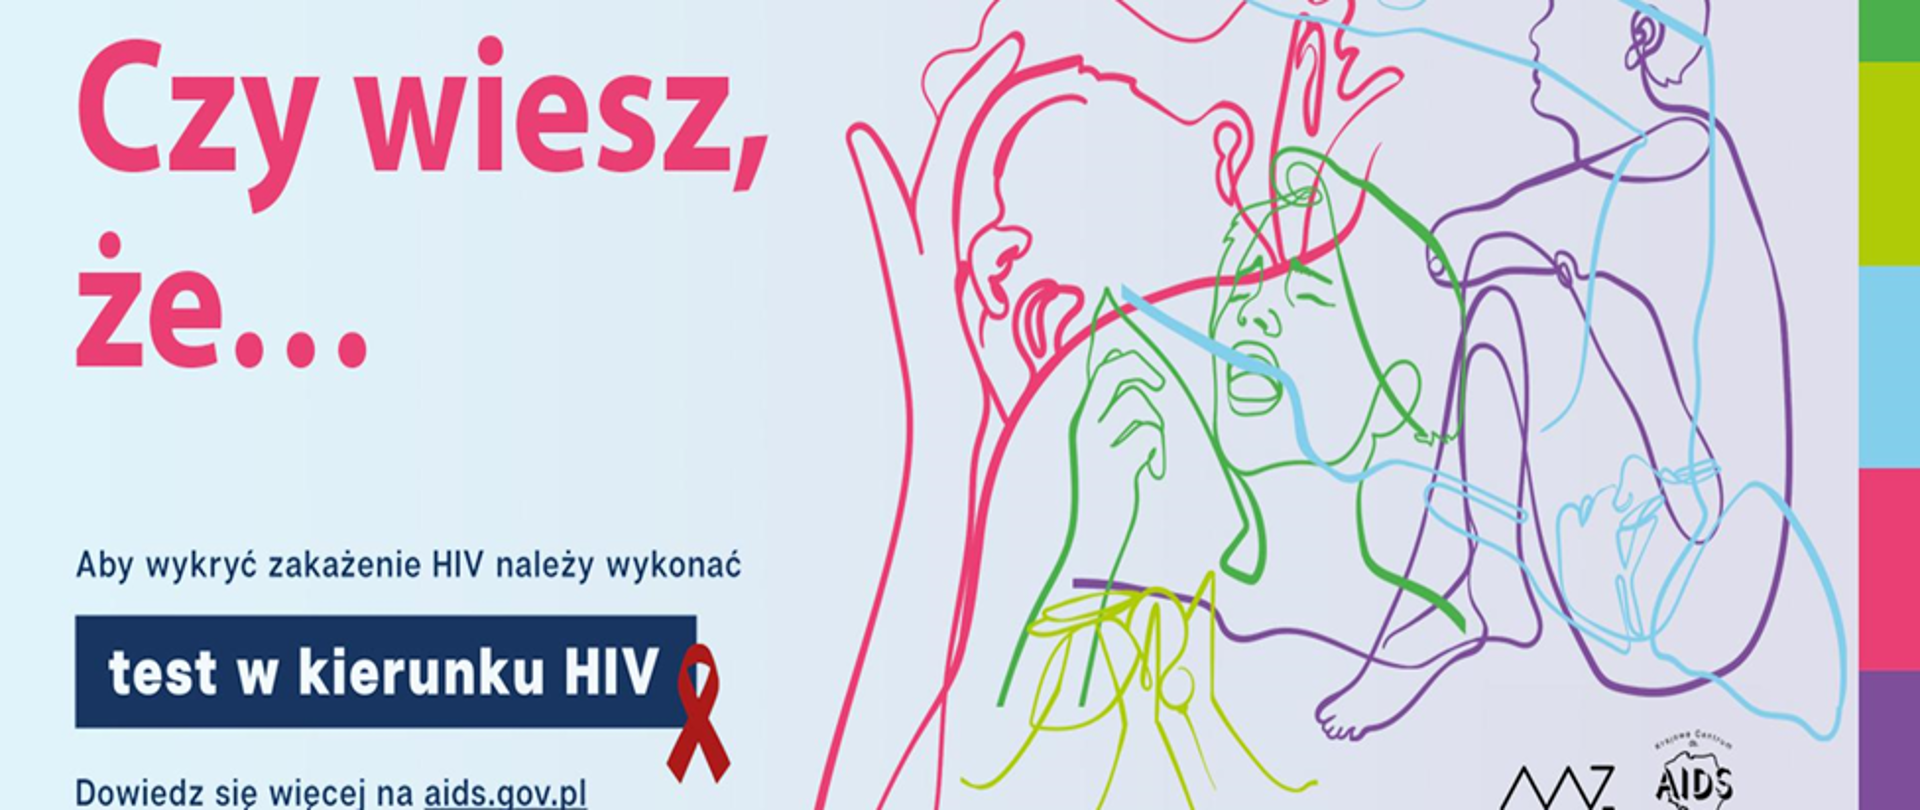 grafika z tekstem "czy wiesz, że..." (chodzi o testy w kierunku HIV), obok tekstu rysowane kreską kontury postaci ludzi